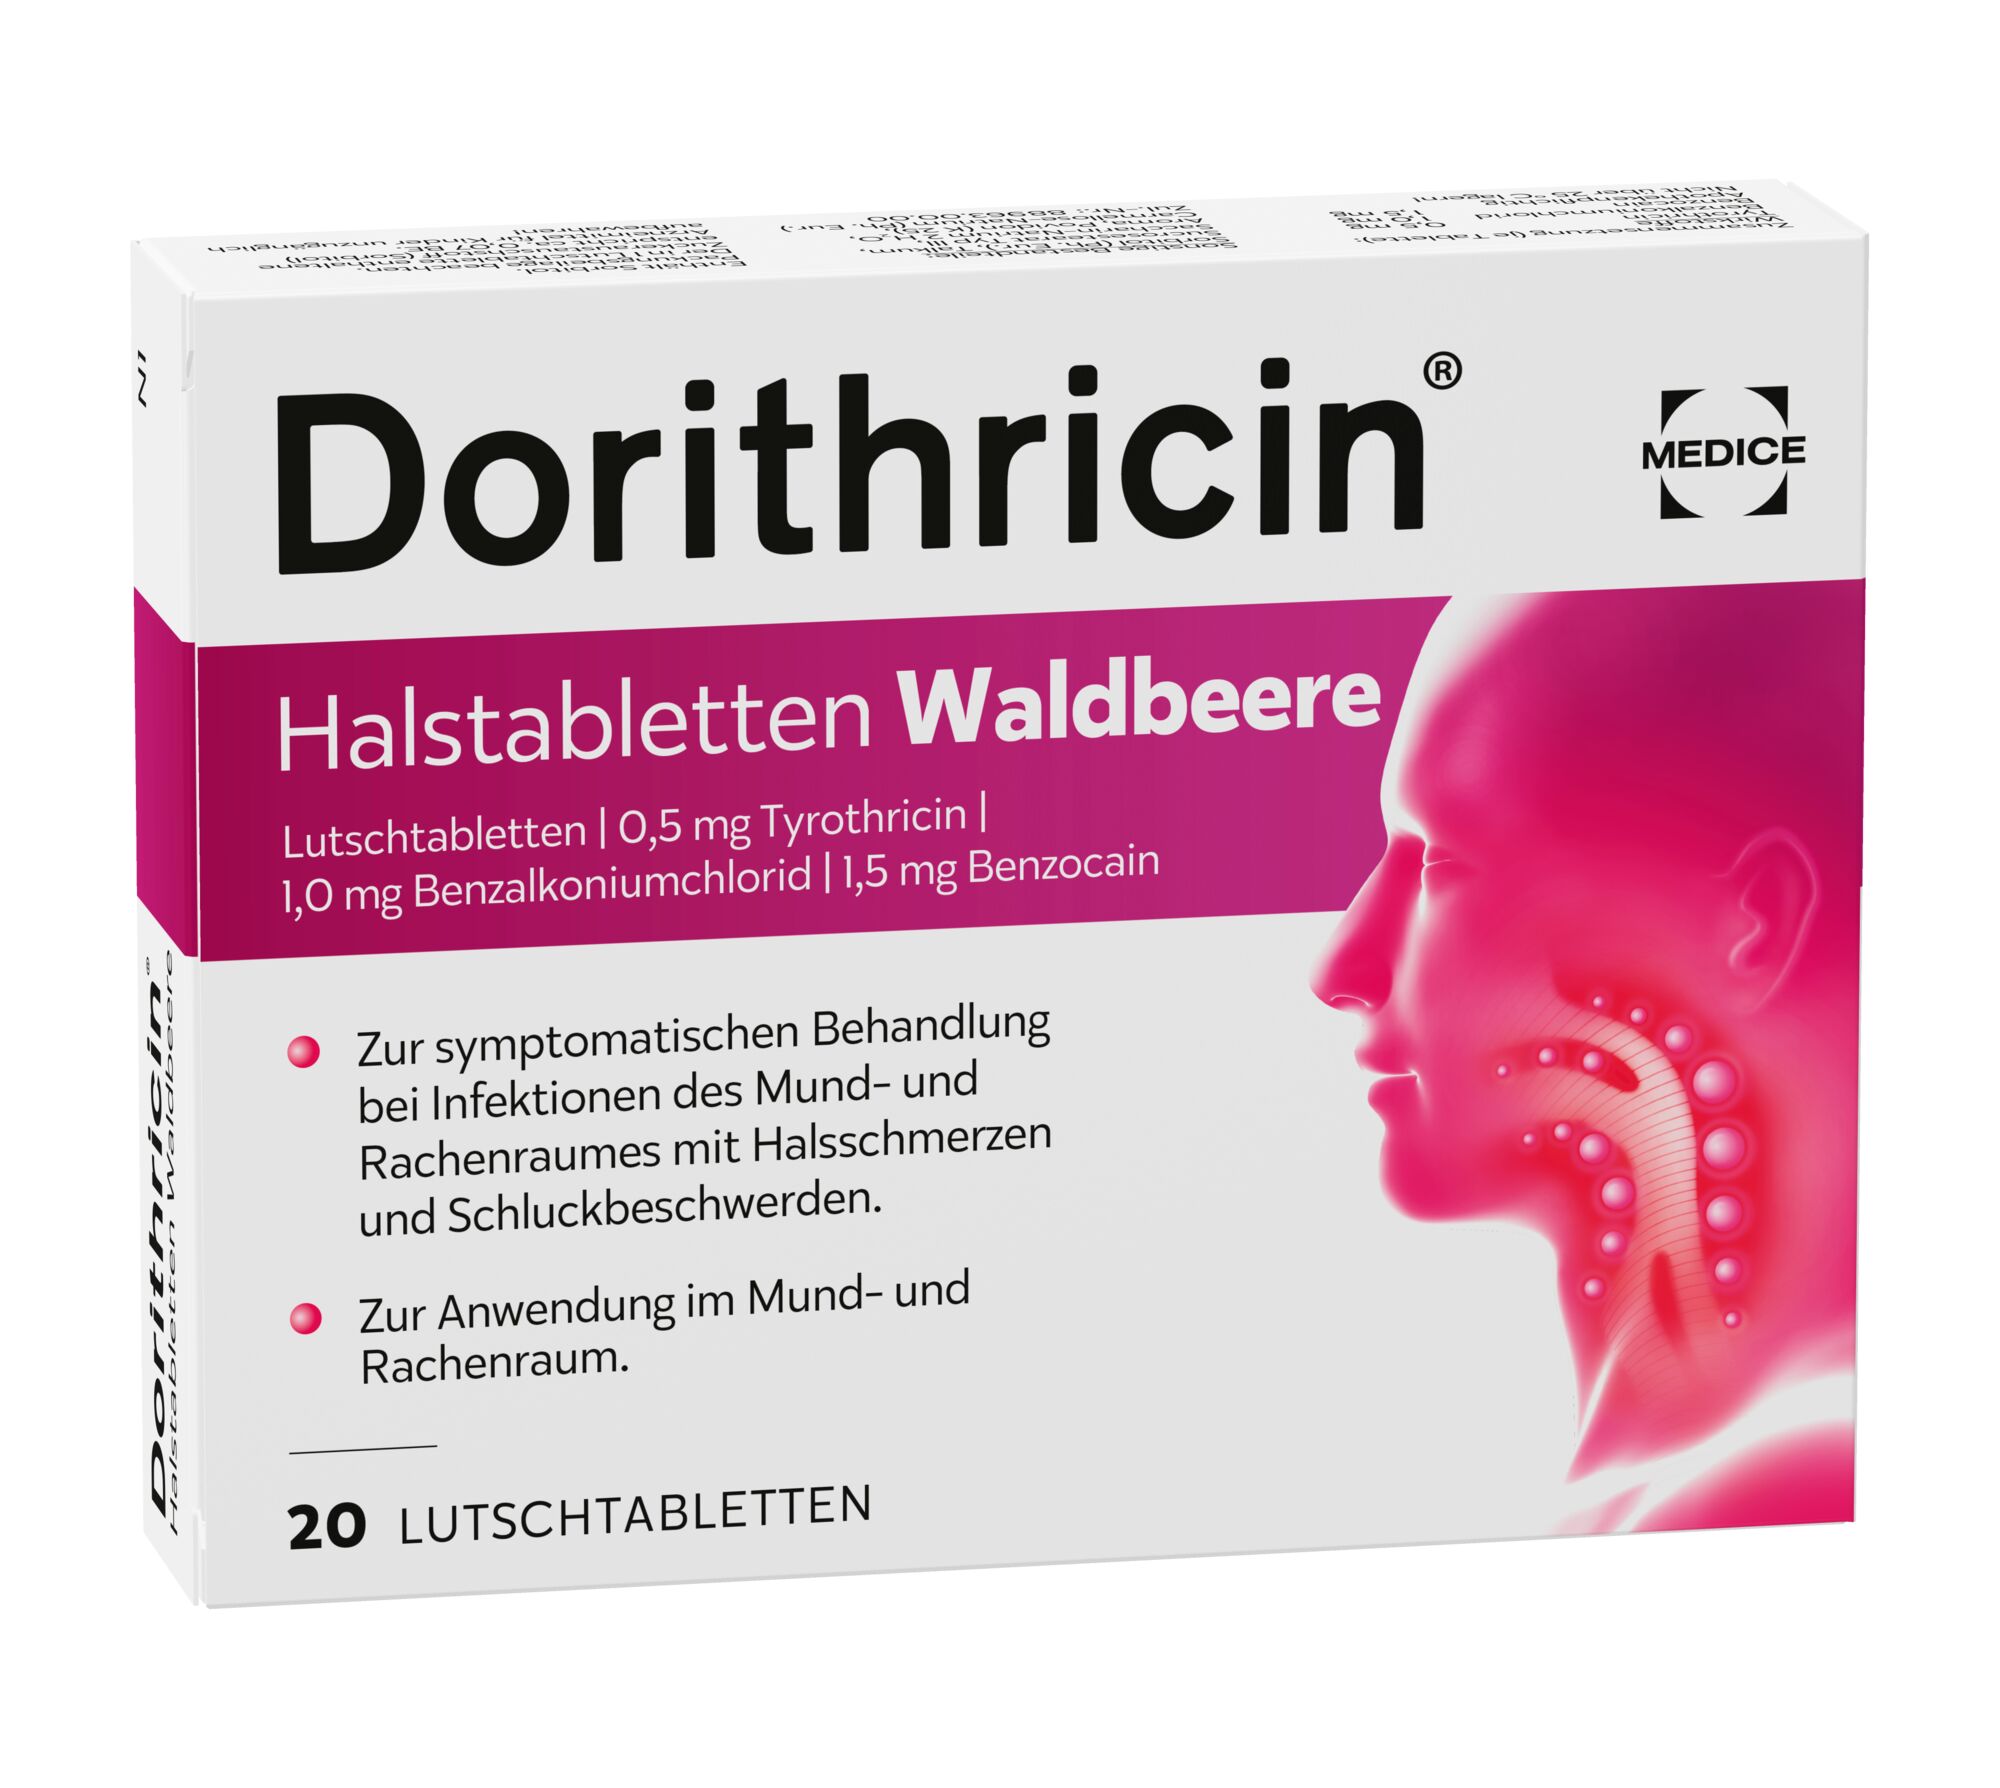 Dorithricin Halstabletten Waldbeere (40 Stk)